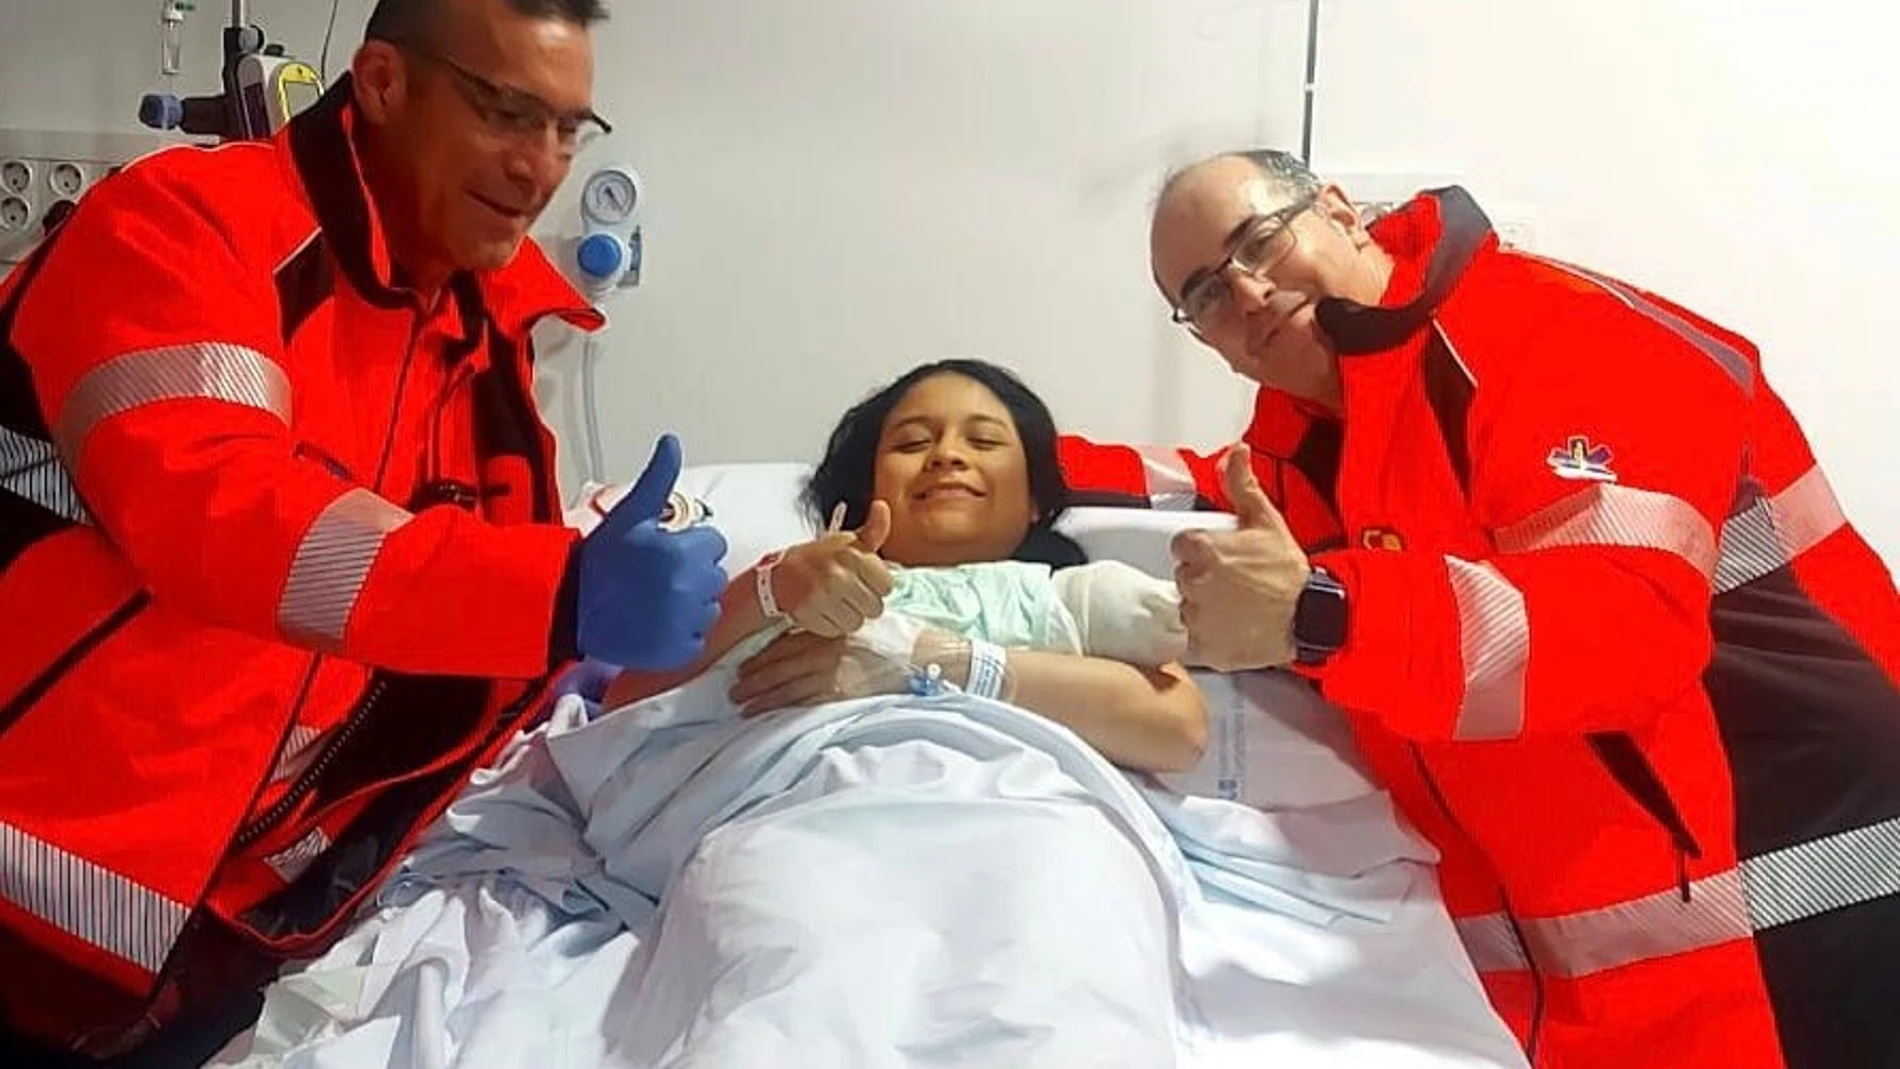 Nace en buen estado un bebé en una ambulancia del SEPA de Pozuelo (Madrid) con la ayuda de dos técnicos sanitarios